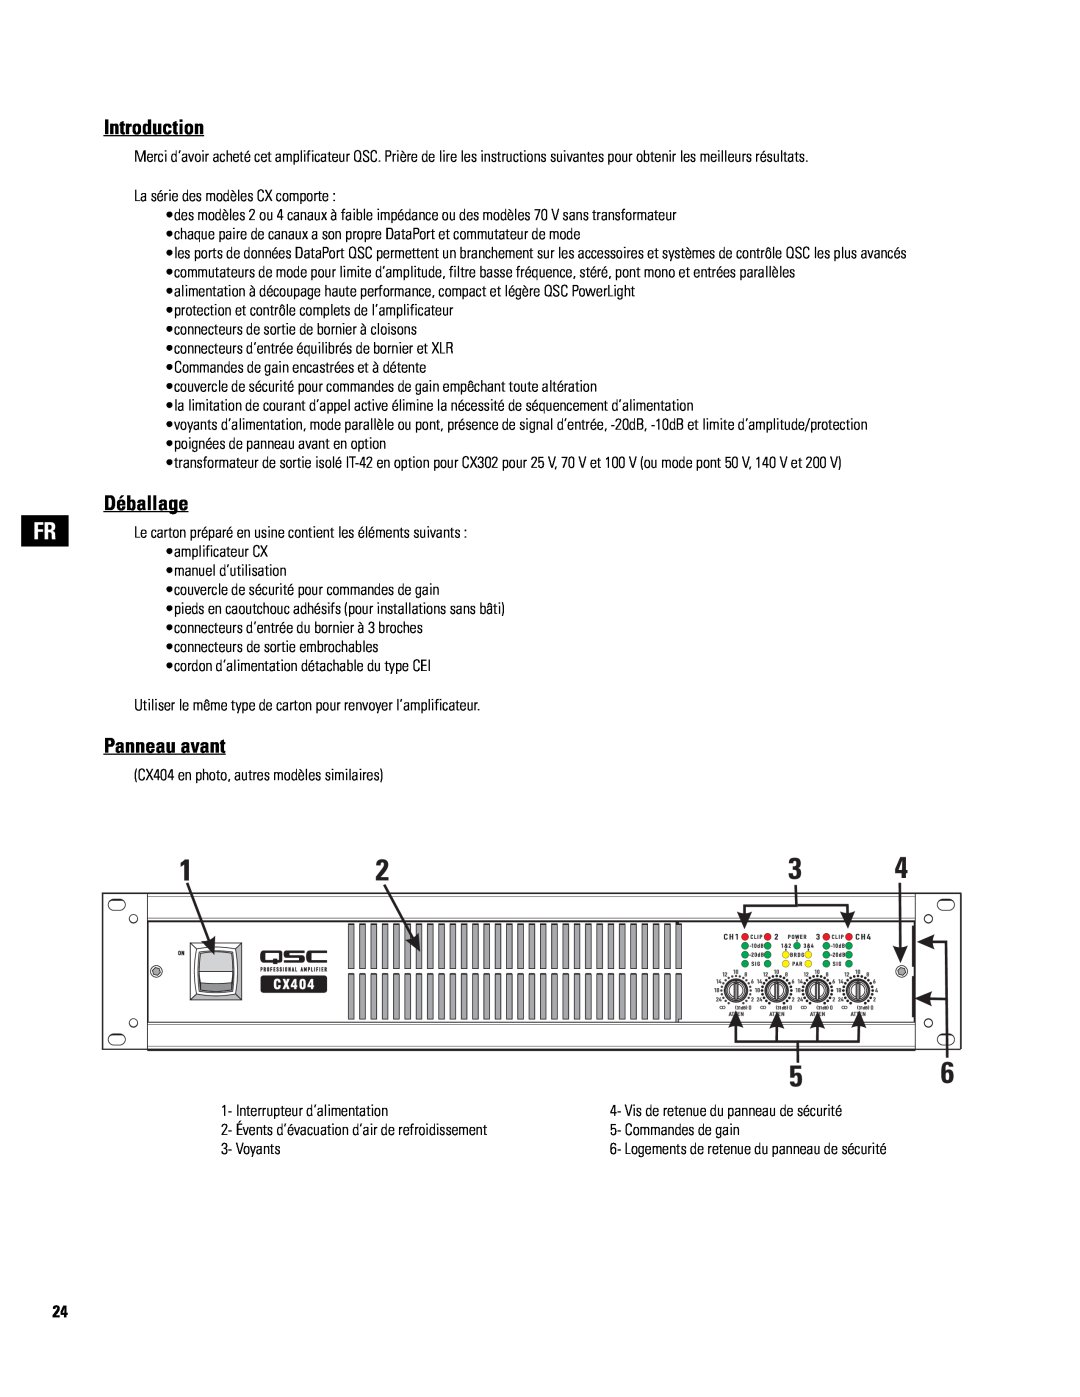 QSC Audio 8 ohm capable) user manual Introduction, Déballage, Panneau avant 